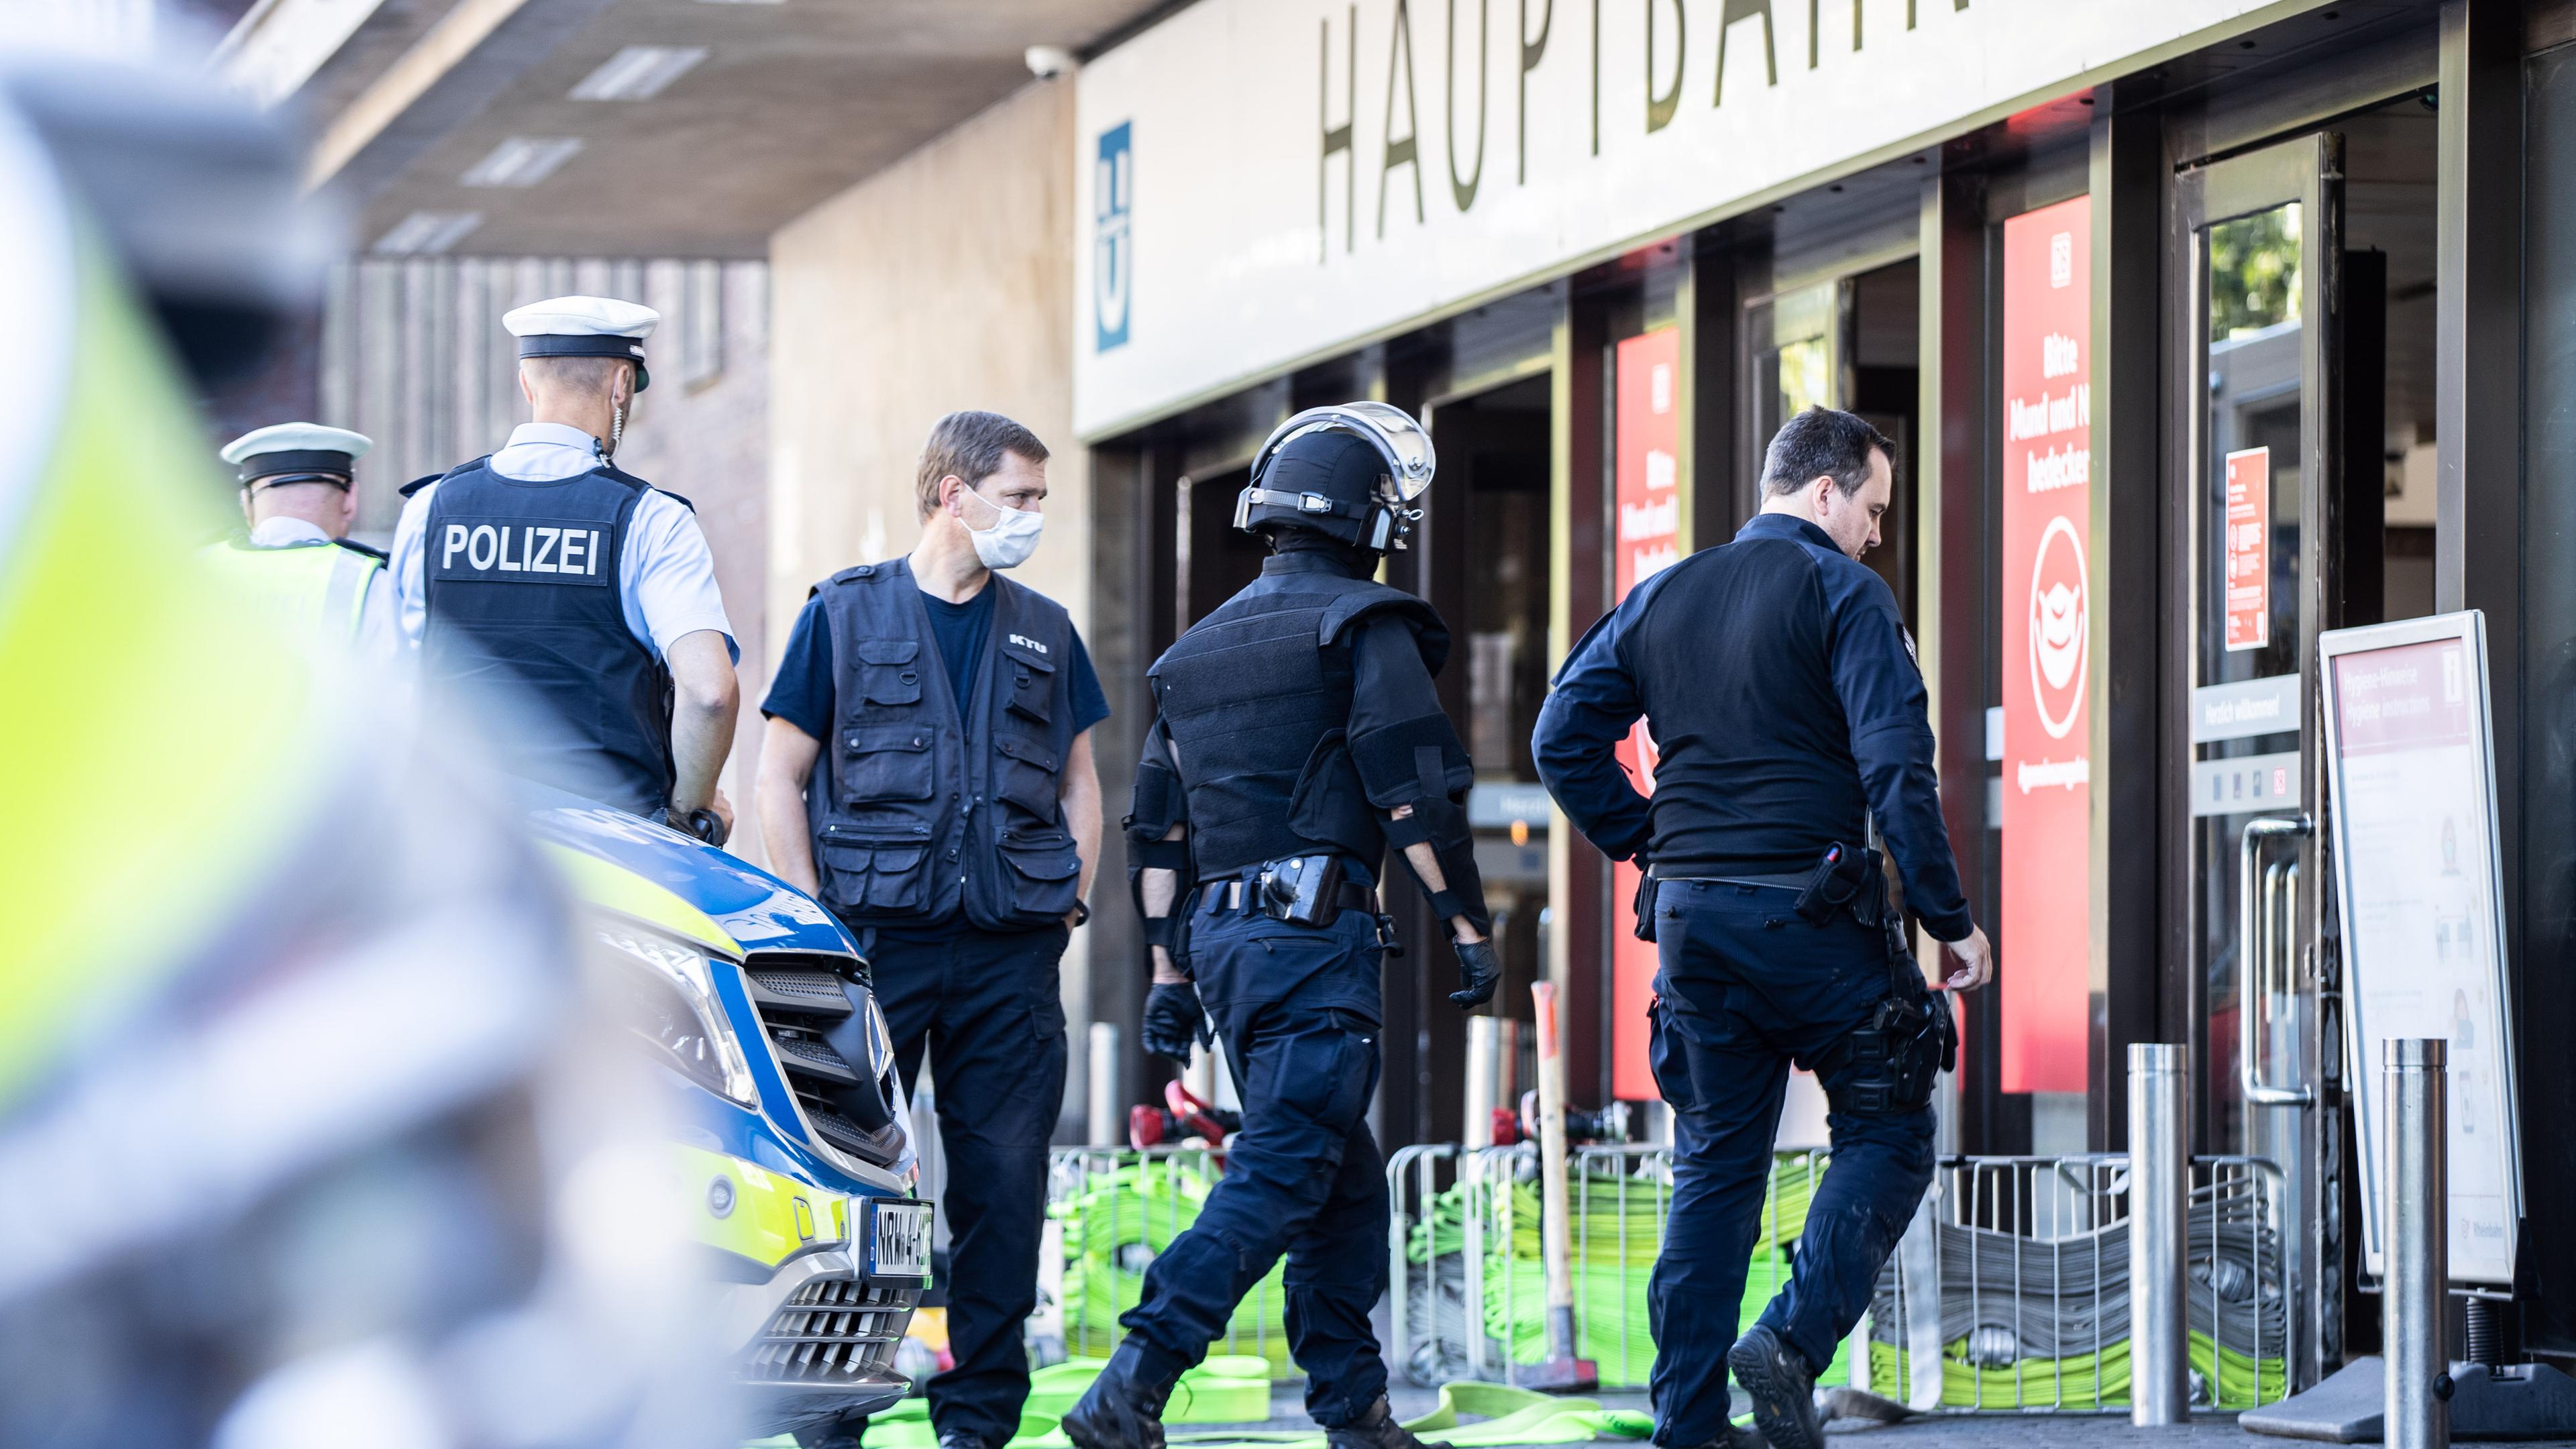 Polizei bei Einsatz im Bahnhof Düsseldorf, aufgenommen am 31.07.2020